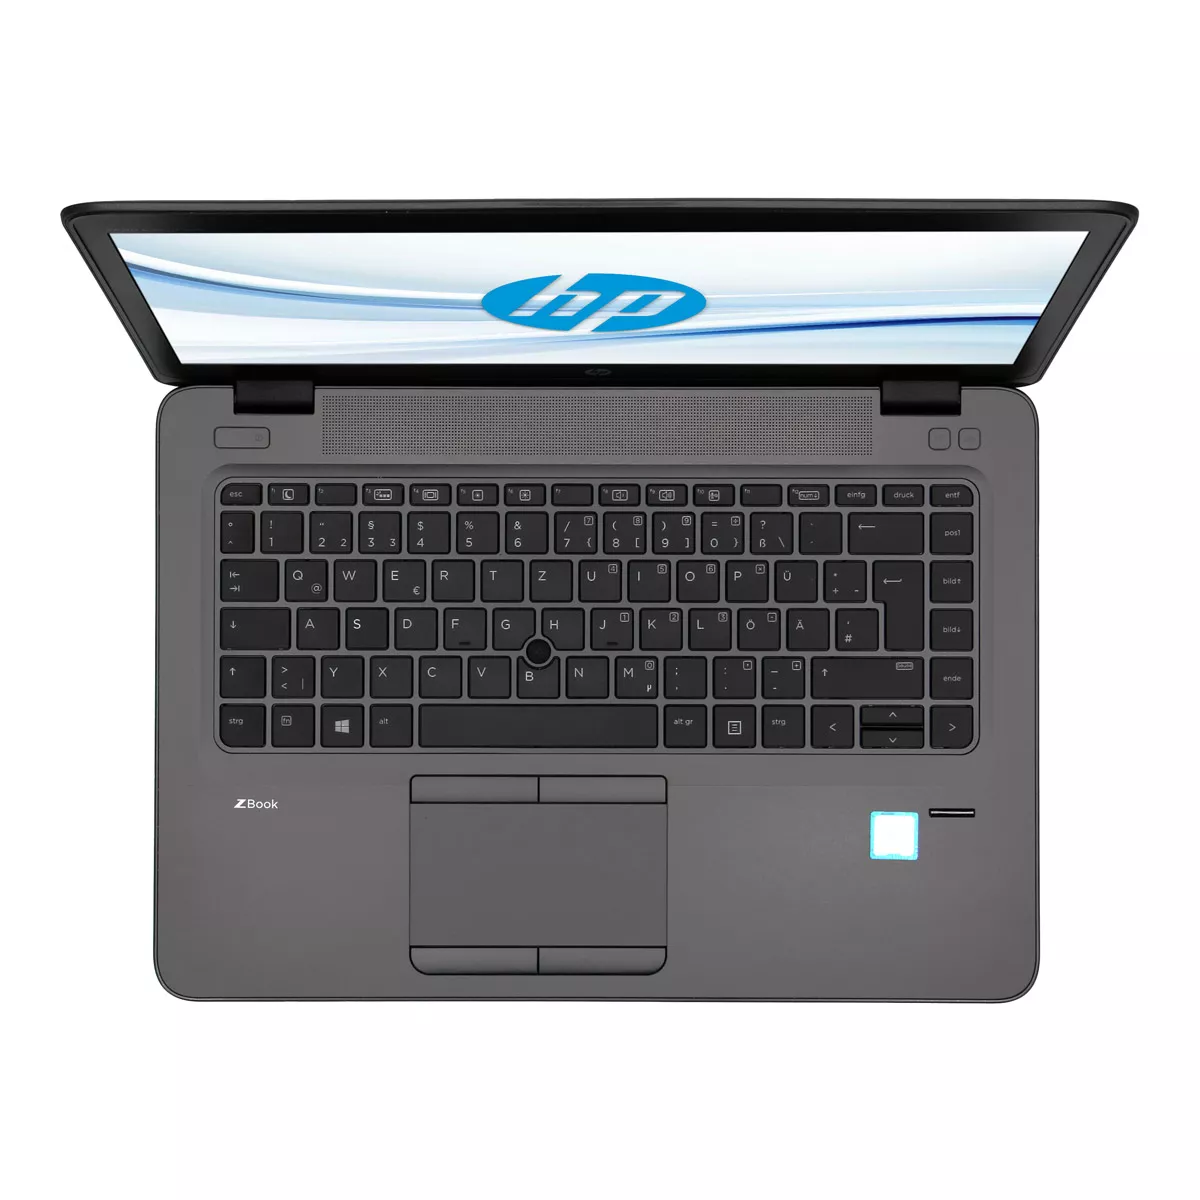 HP ZBook 14u G4 Core i7 7600U 16 GB DDR4 500 GB M.2 nVME SSD Webcam